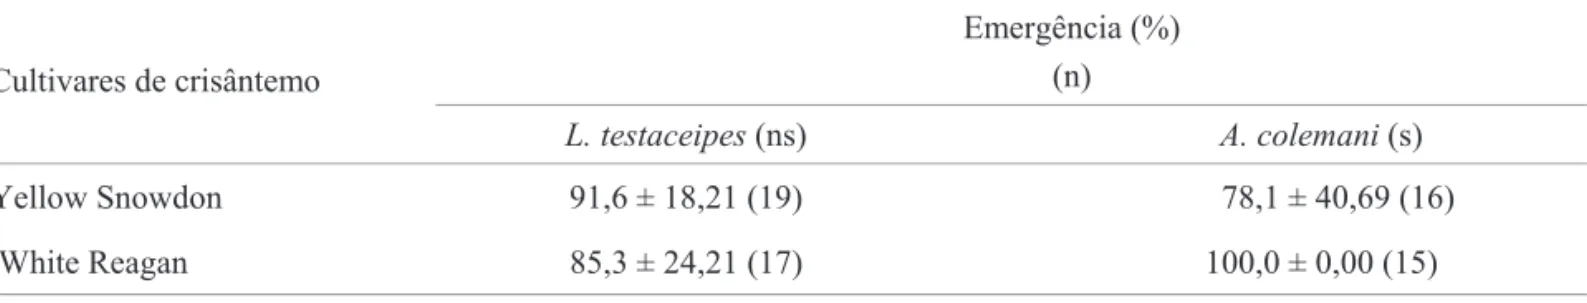 Tabela 4. Emergência (%) de L. testaceipes e A. colemani em A. gossypii criada em duas cultivares de crisântemo.